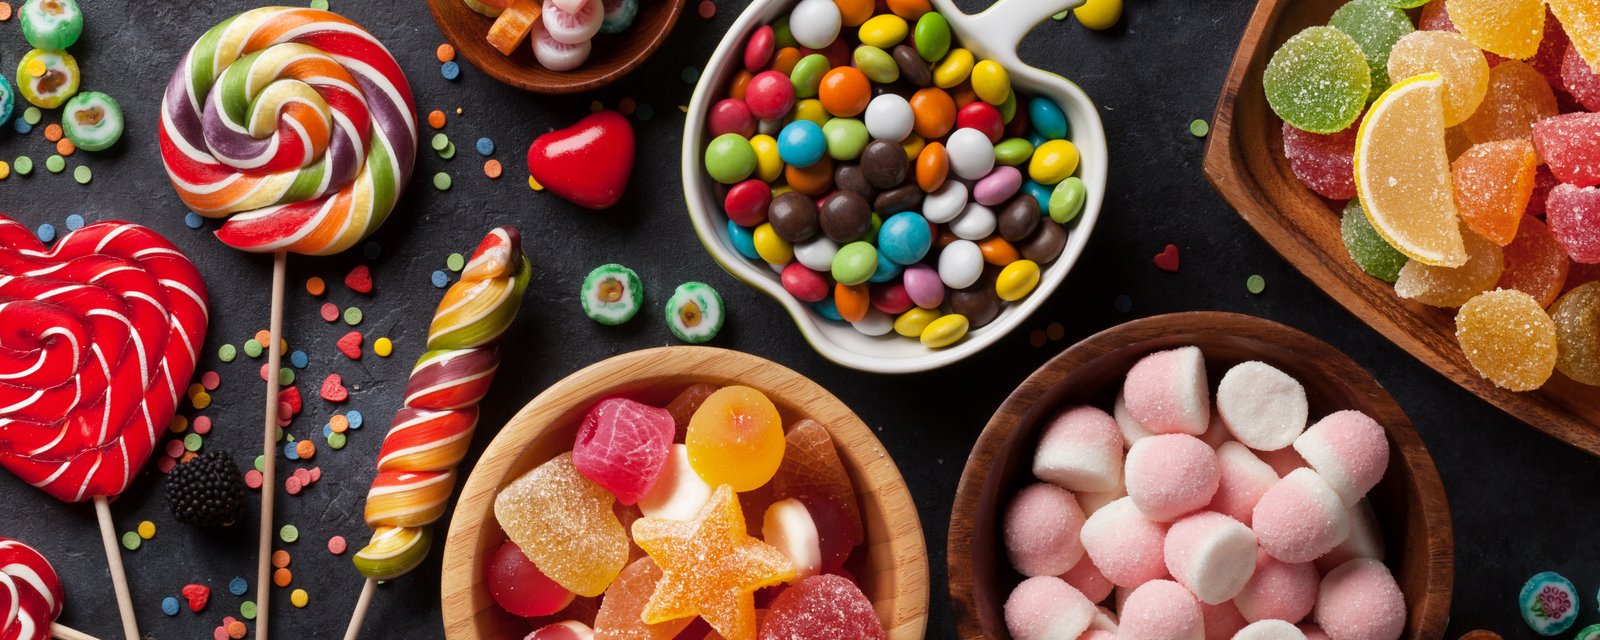 Une entreprise à la recherche d'une personne payée 100 000$/an pour manger des bonbons 